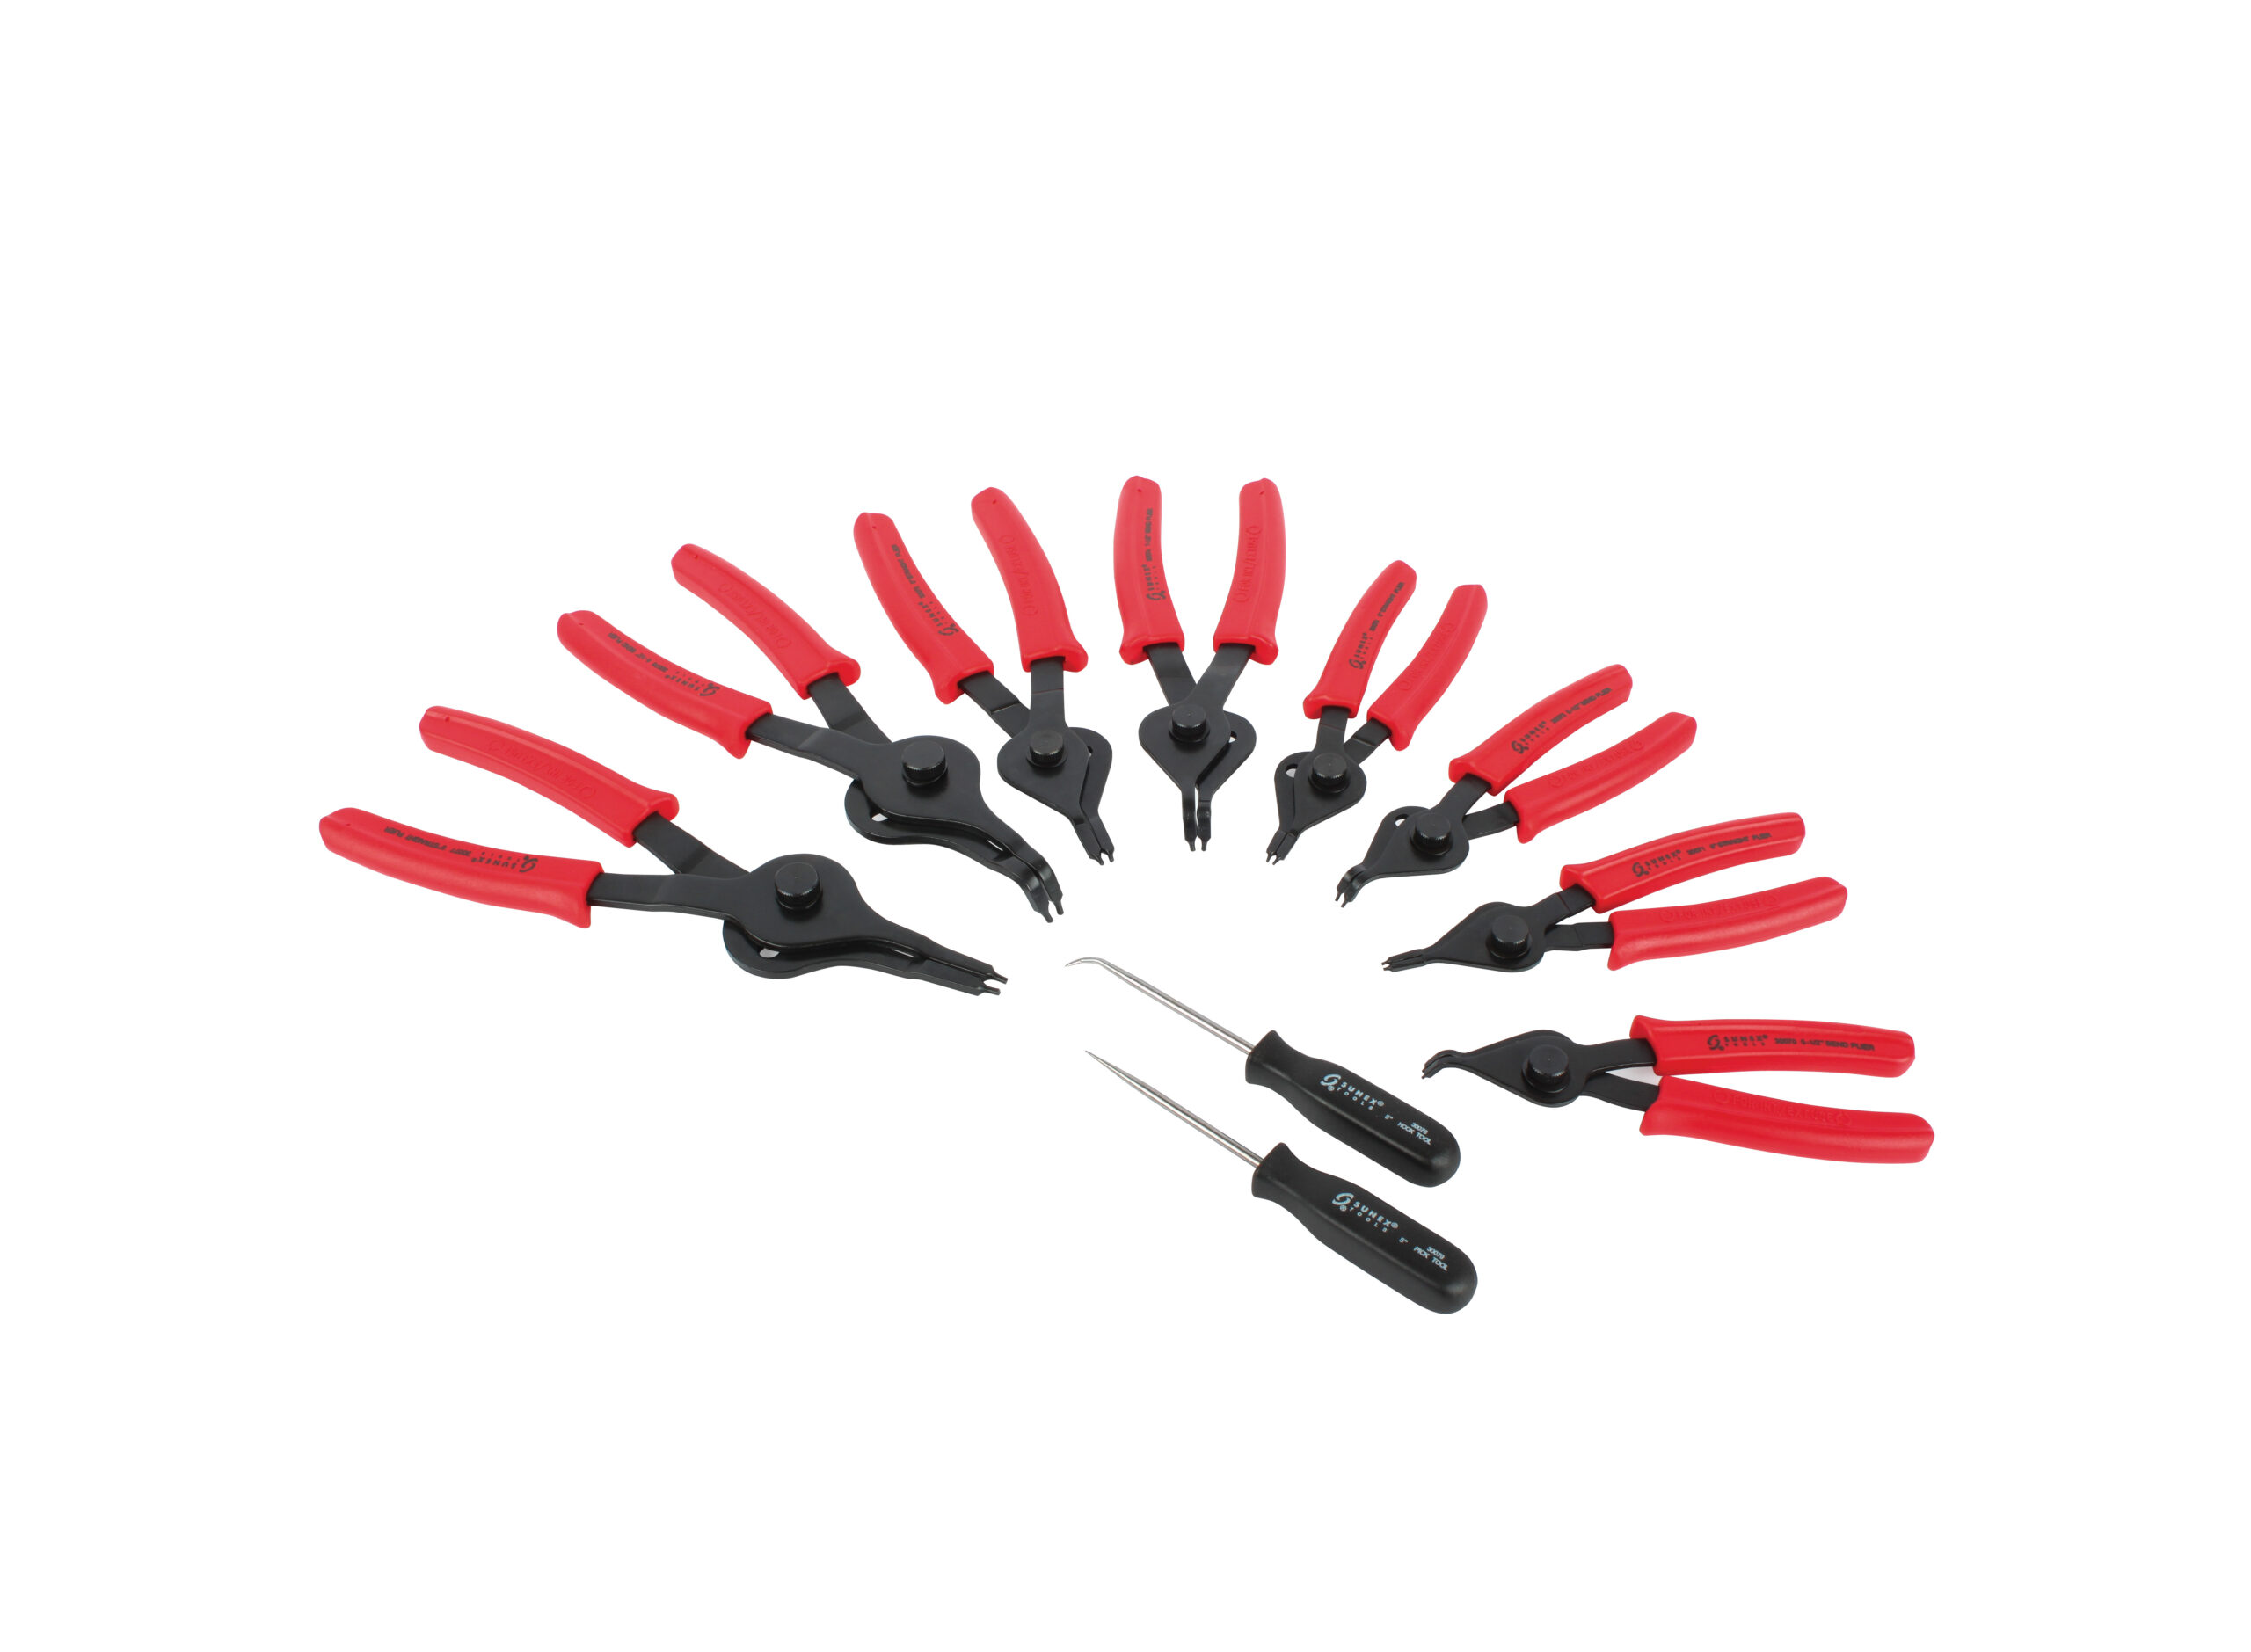 10 Piece Snap Ring Pliers Set - SUNEX Tools